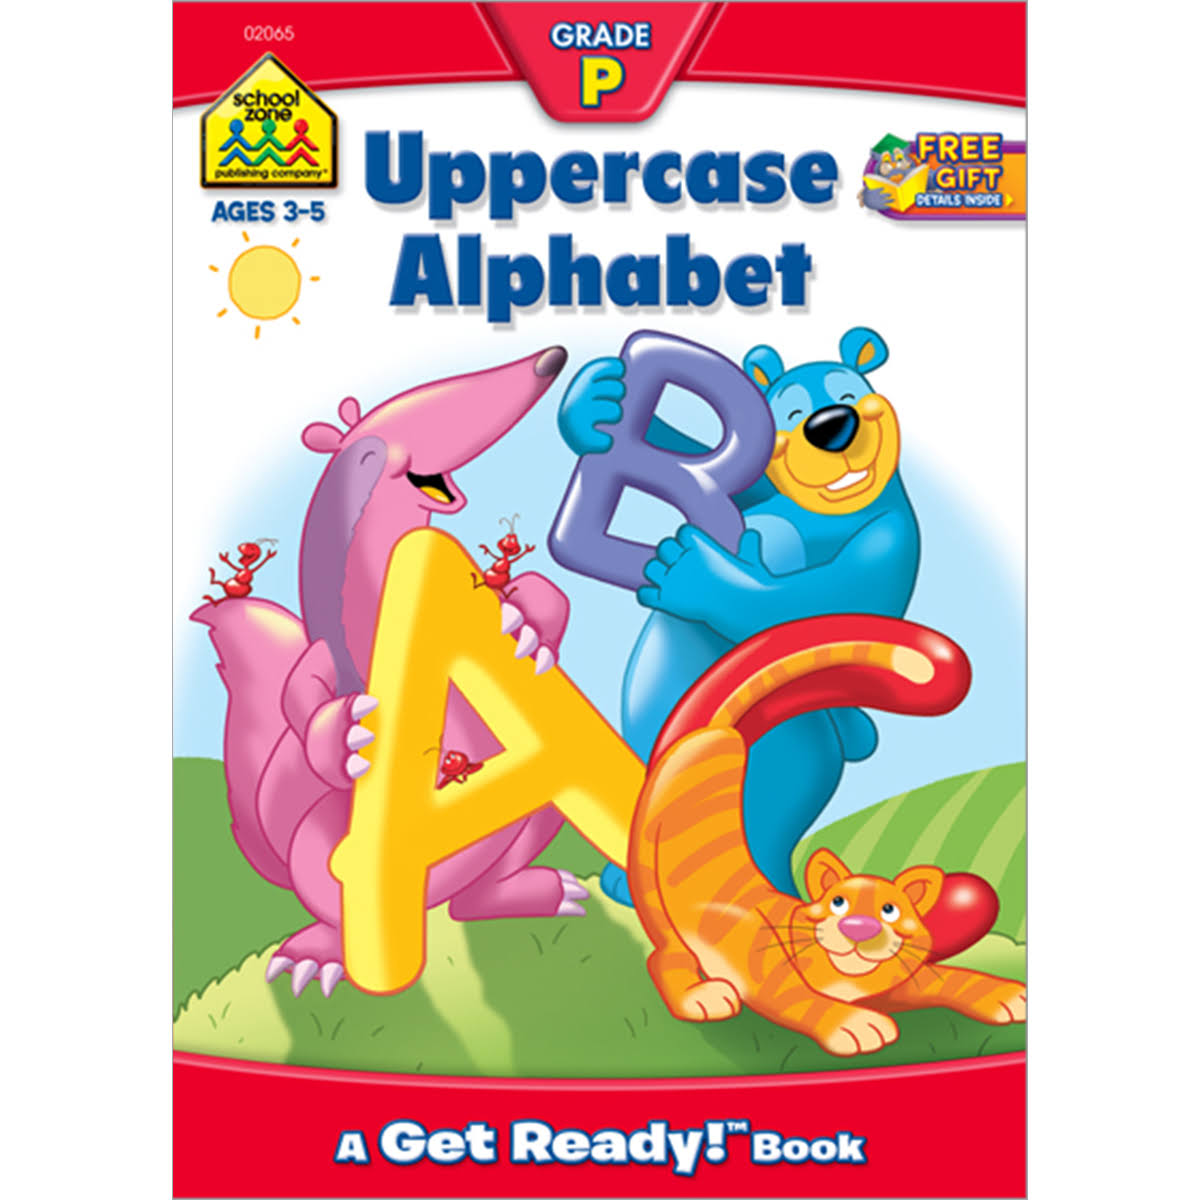 School Zone Uppercase Alphabet - Ages 3-5